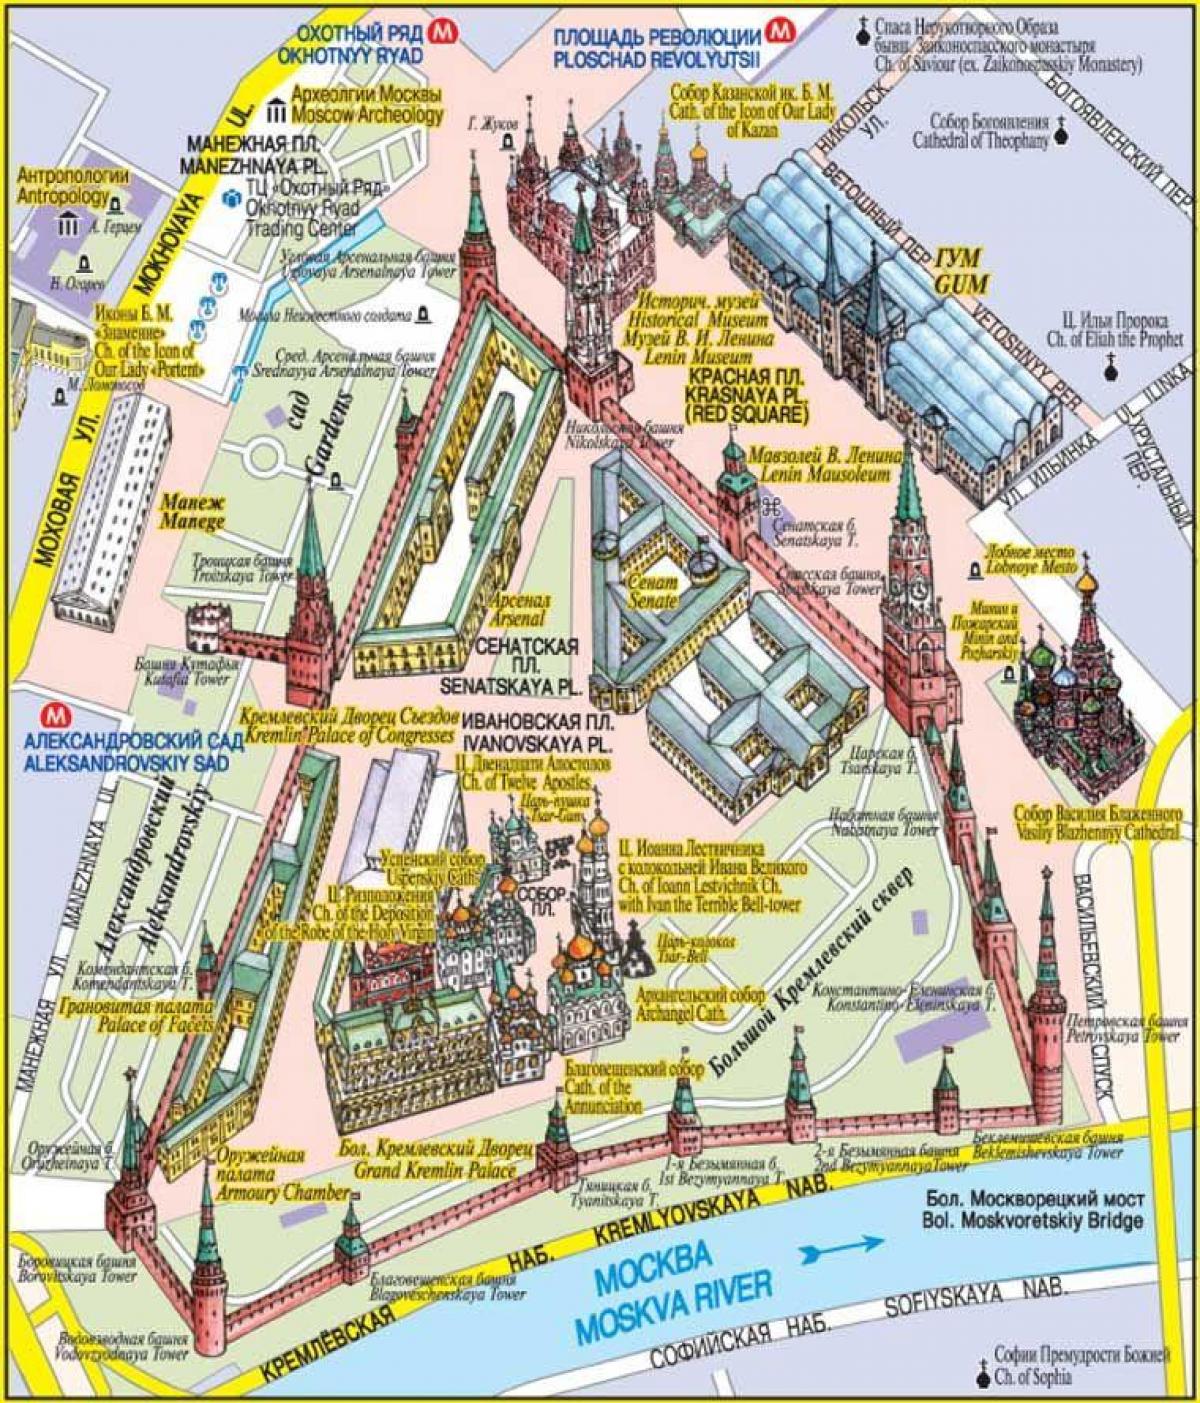 ماسکو کے ریڈ اسکوائر کا نقشہ